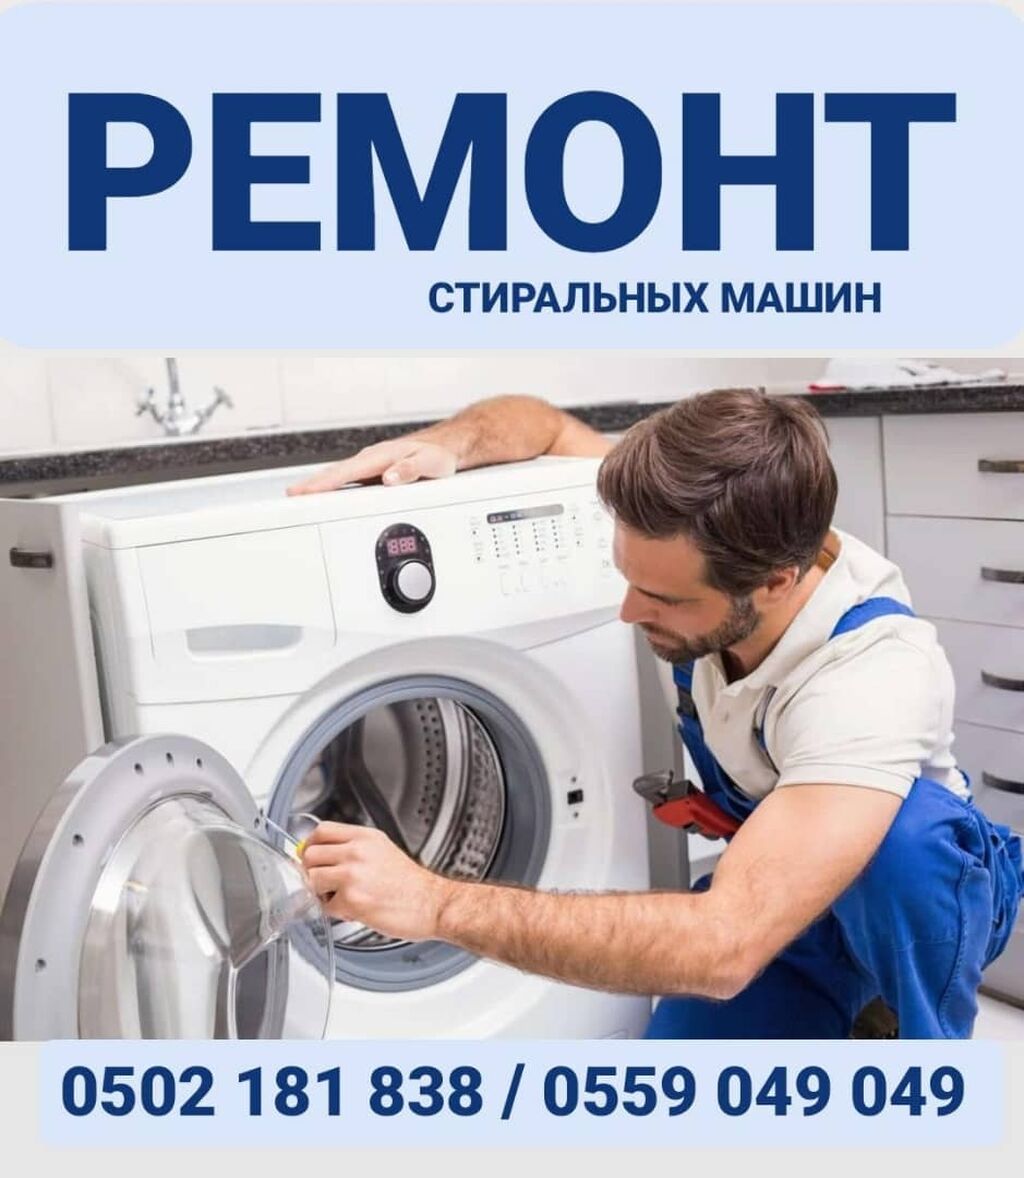 Ремонт стиральных машин в Омске на дому | Вызов Мастера